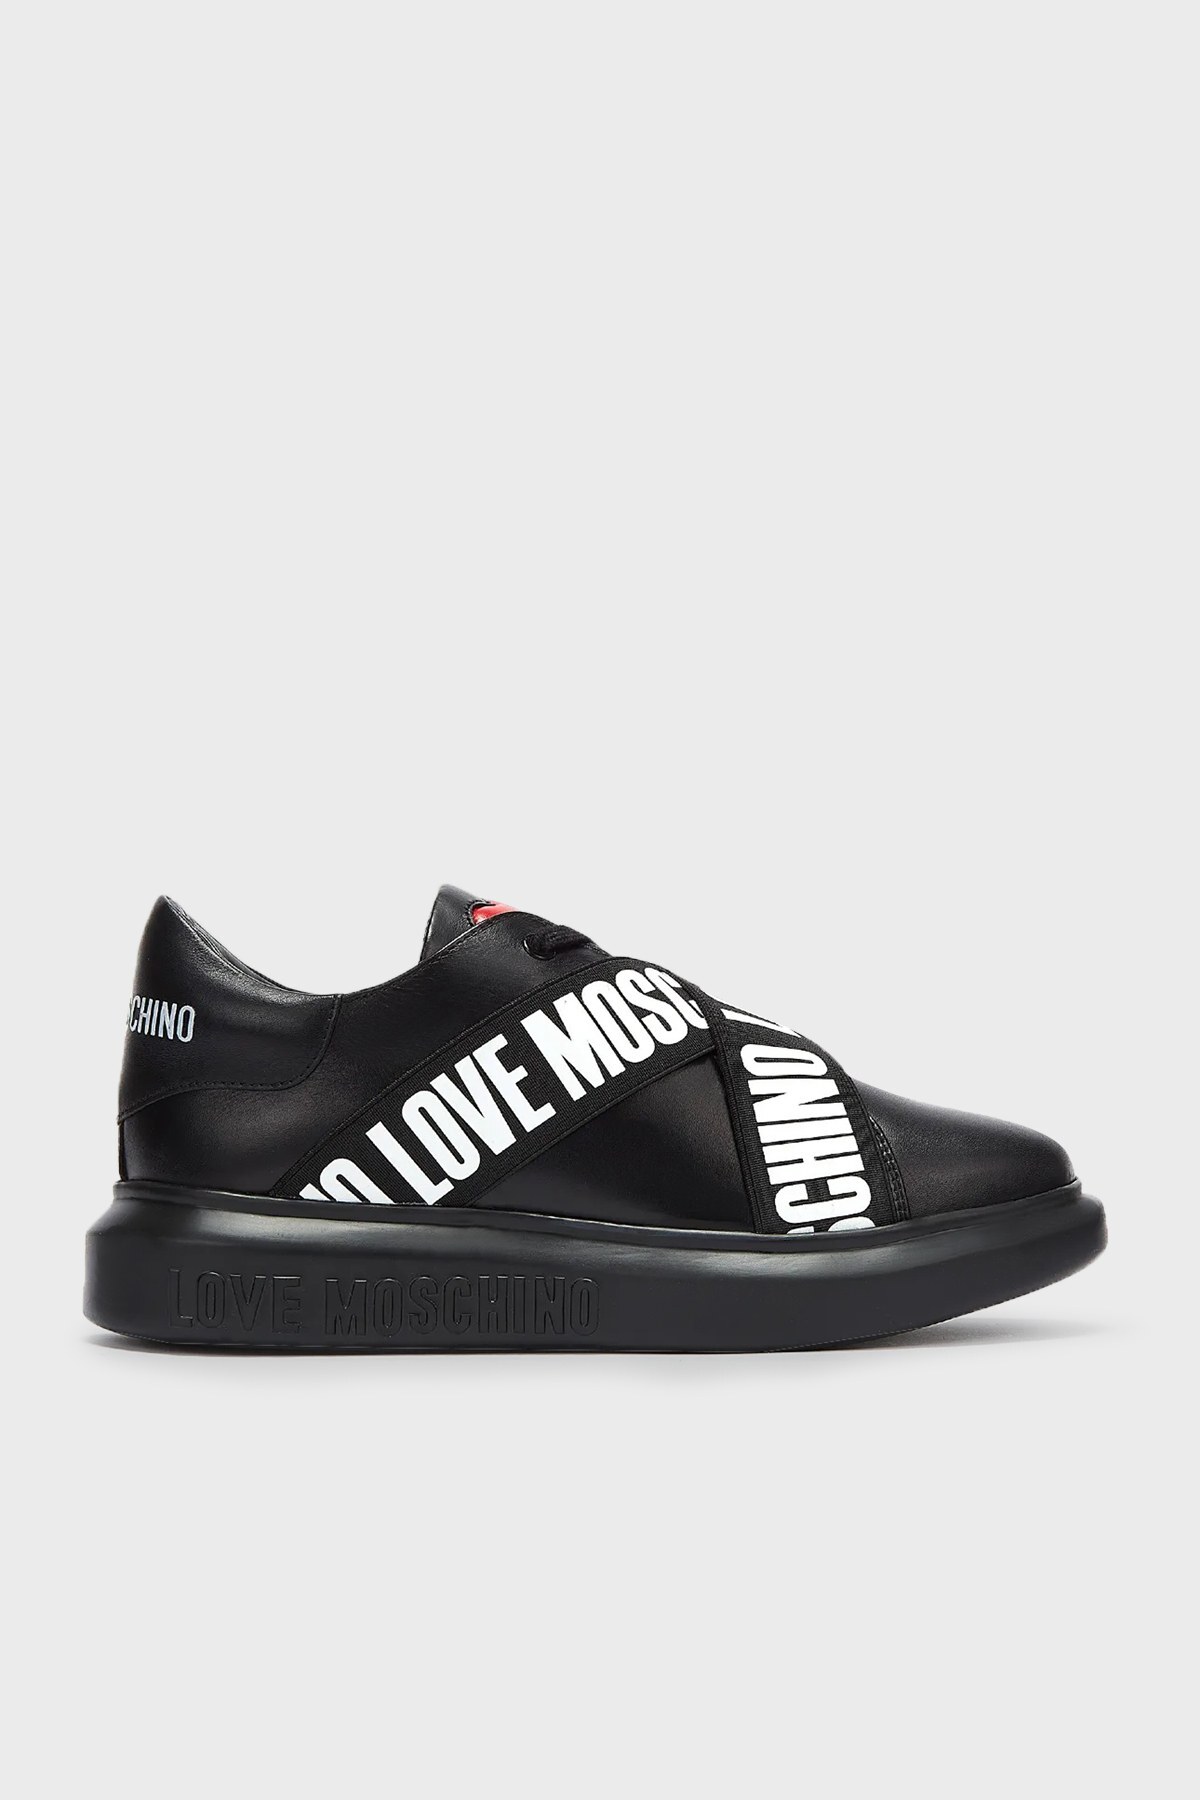 Love Moschino Logolu Deri Bayan Ayakkabı JA15254G1DIA0000 SİYAH